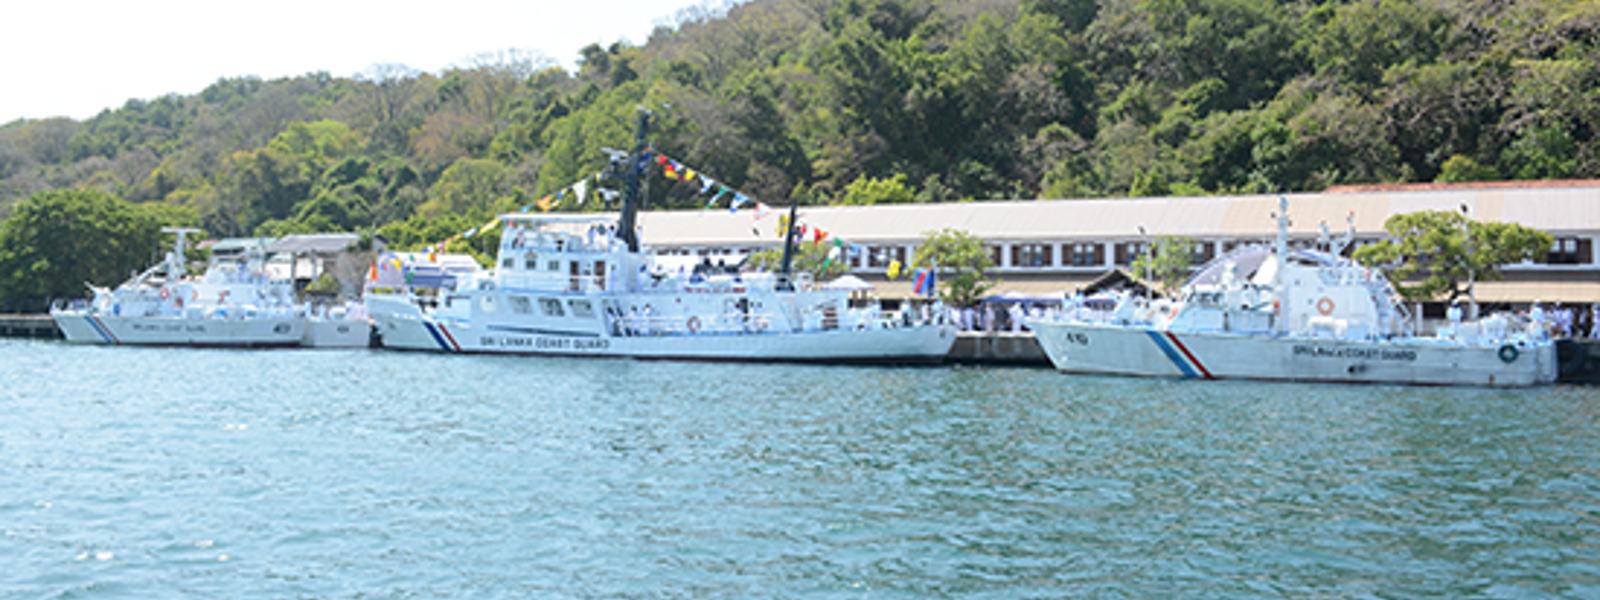 SLCGS Jayesagara joins Coast Guard fleet